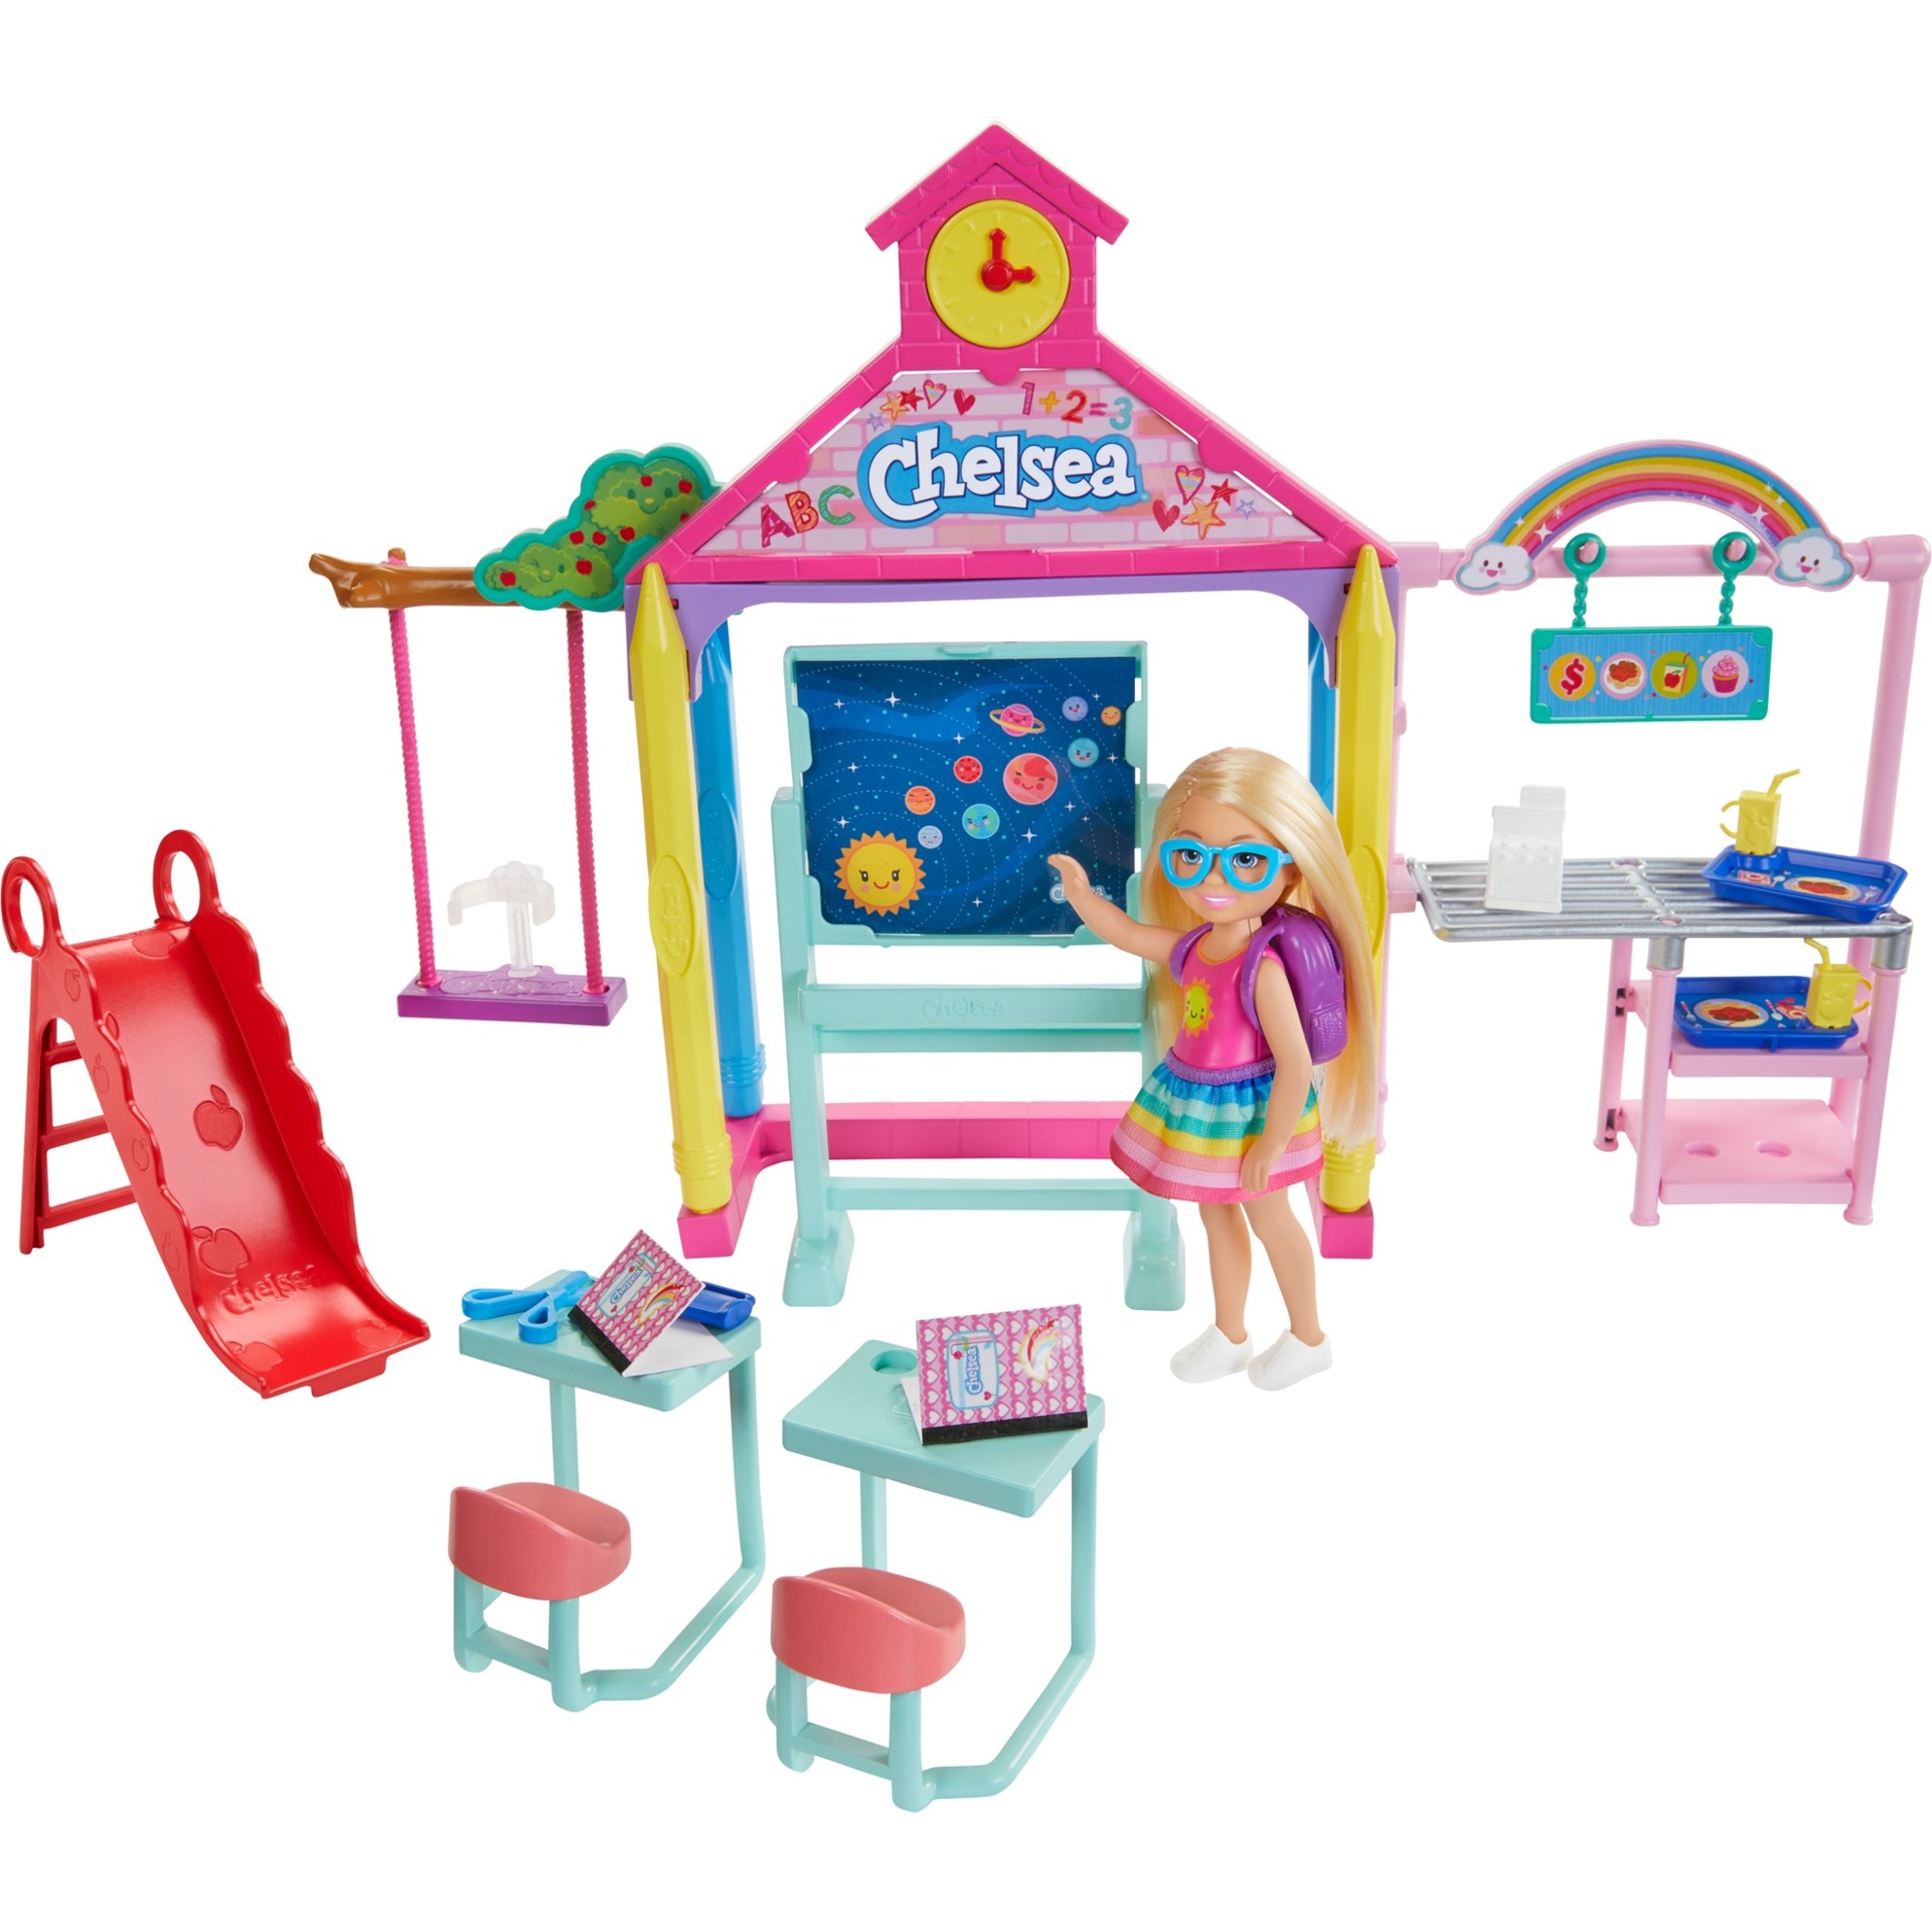 Image of Alternate - Barbie Chelsea Schule mit Puppe Spielset online einkaufen bei Alternate